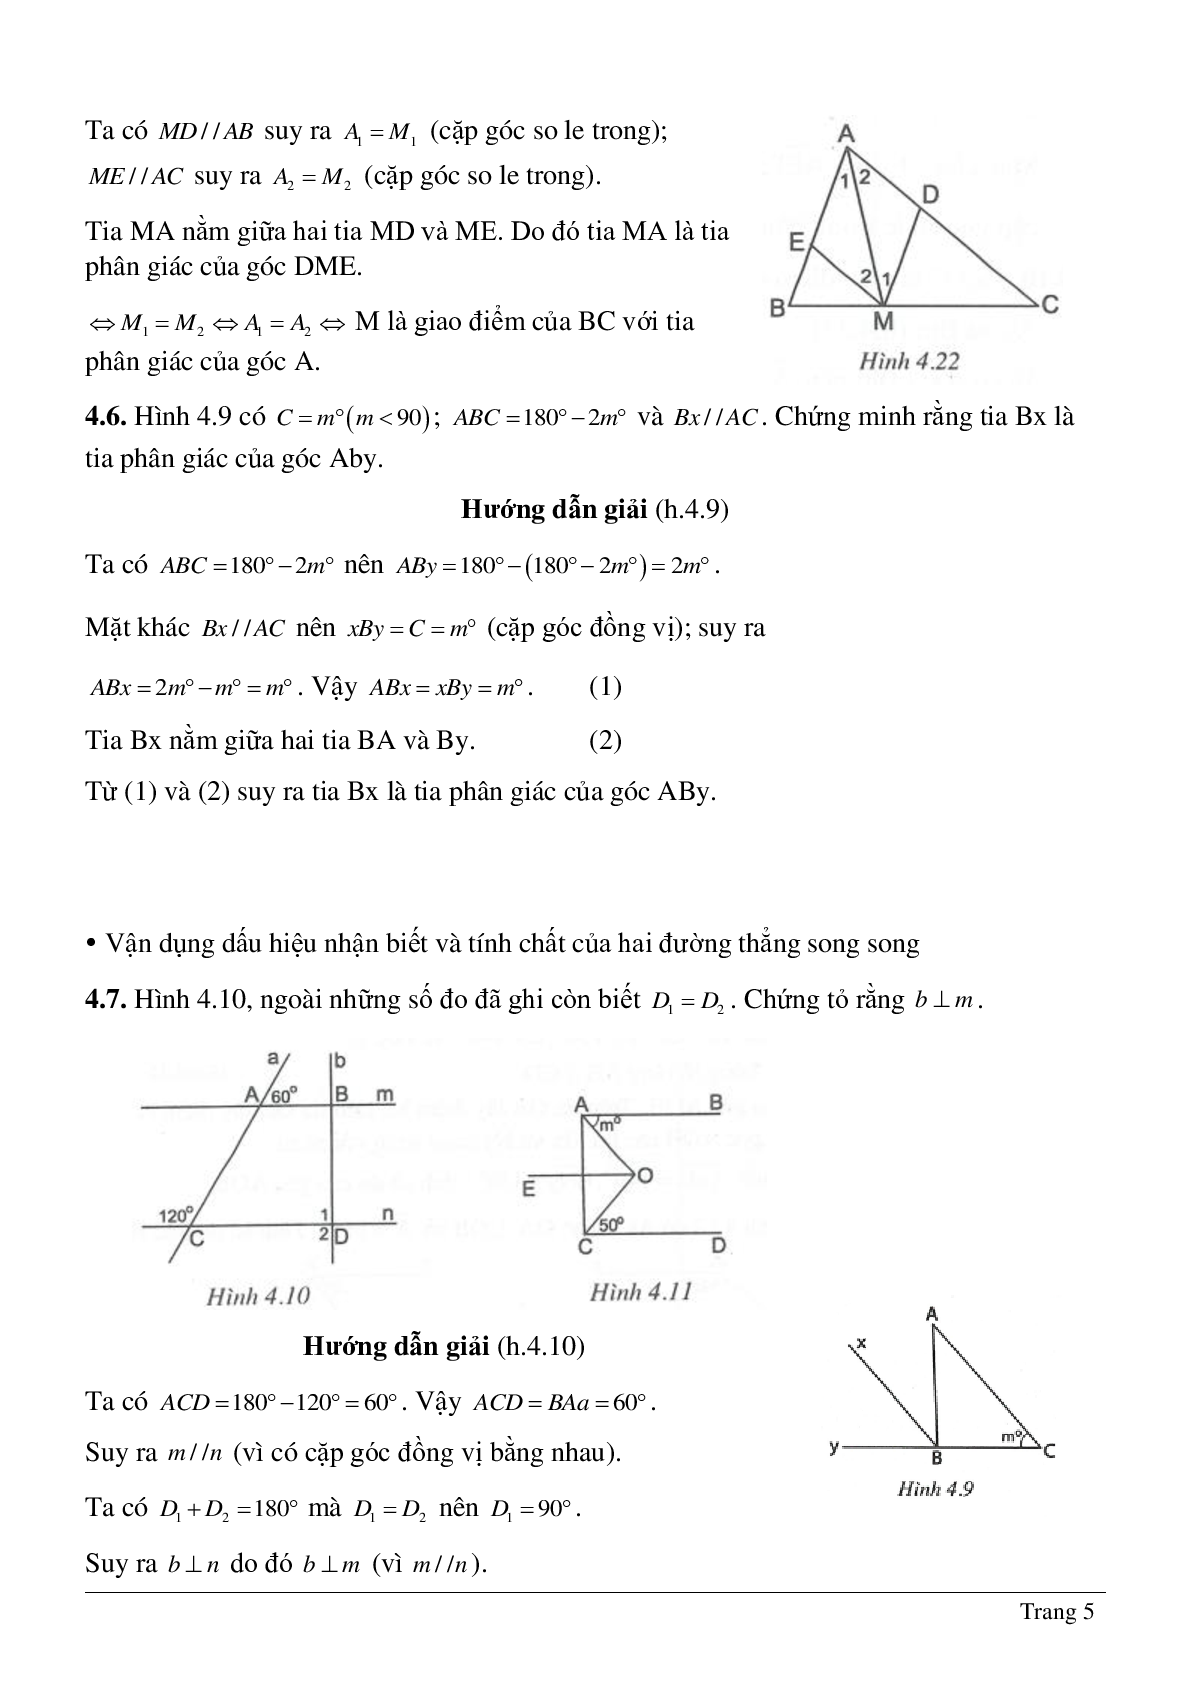 Phương pháp giải và bài tập về Tiên đề Ơ-clit - Tính chất của hai đường thẳng song song có lời giải (trang 5)